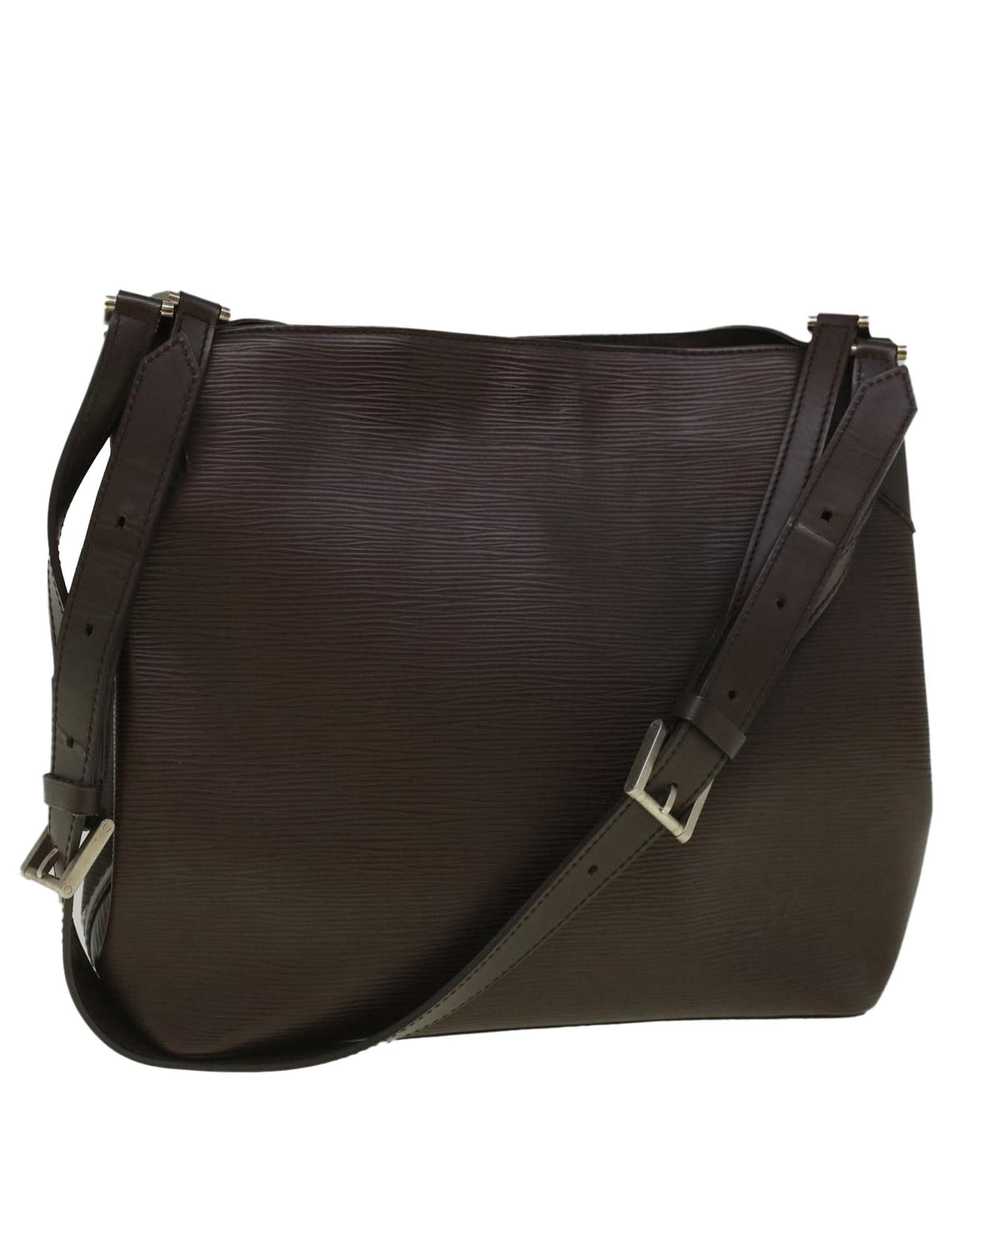 Louis Vuitton Elegant Epi Leather Shoulder Bag - image 1